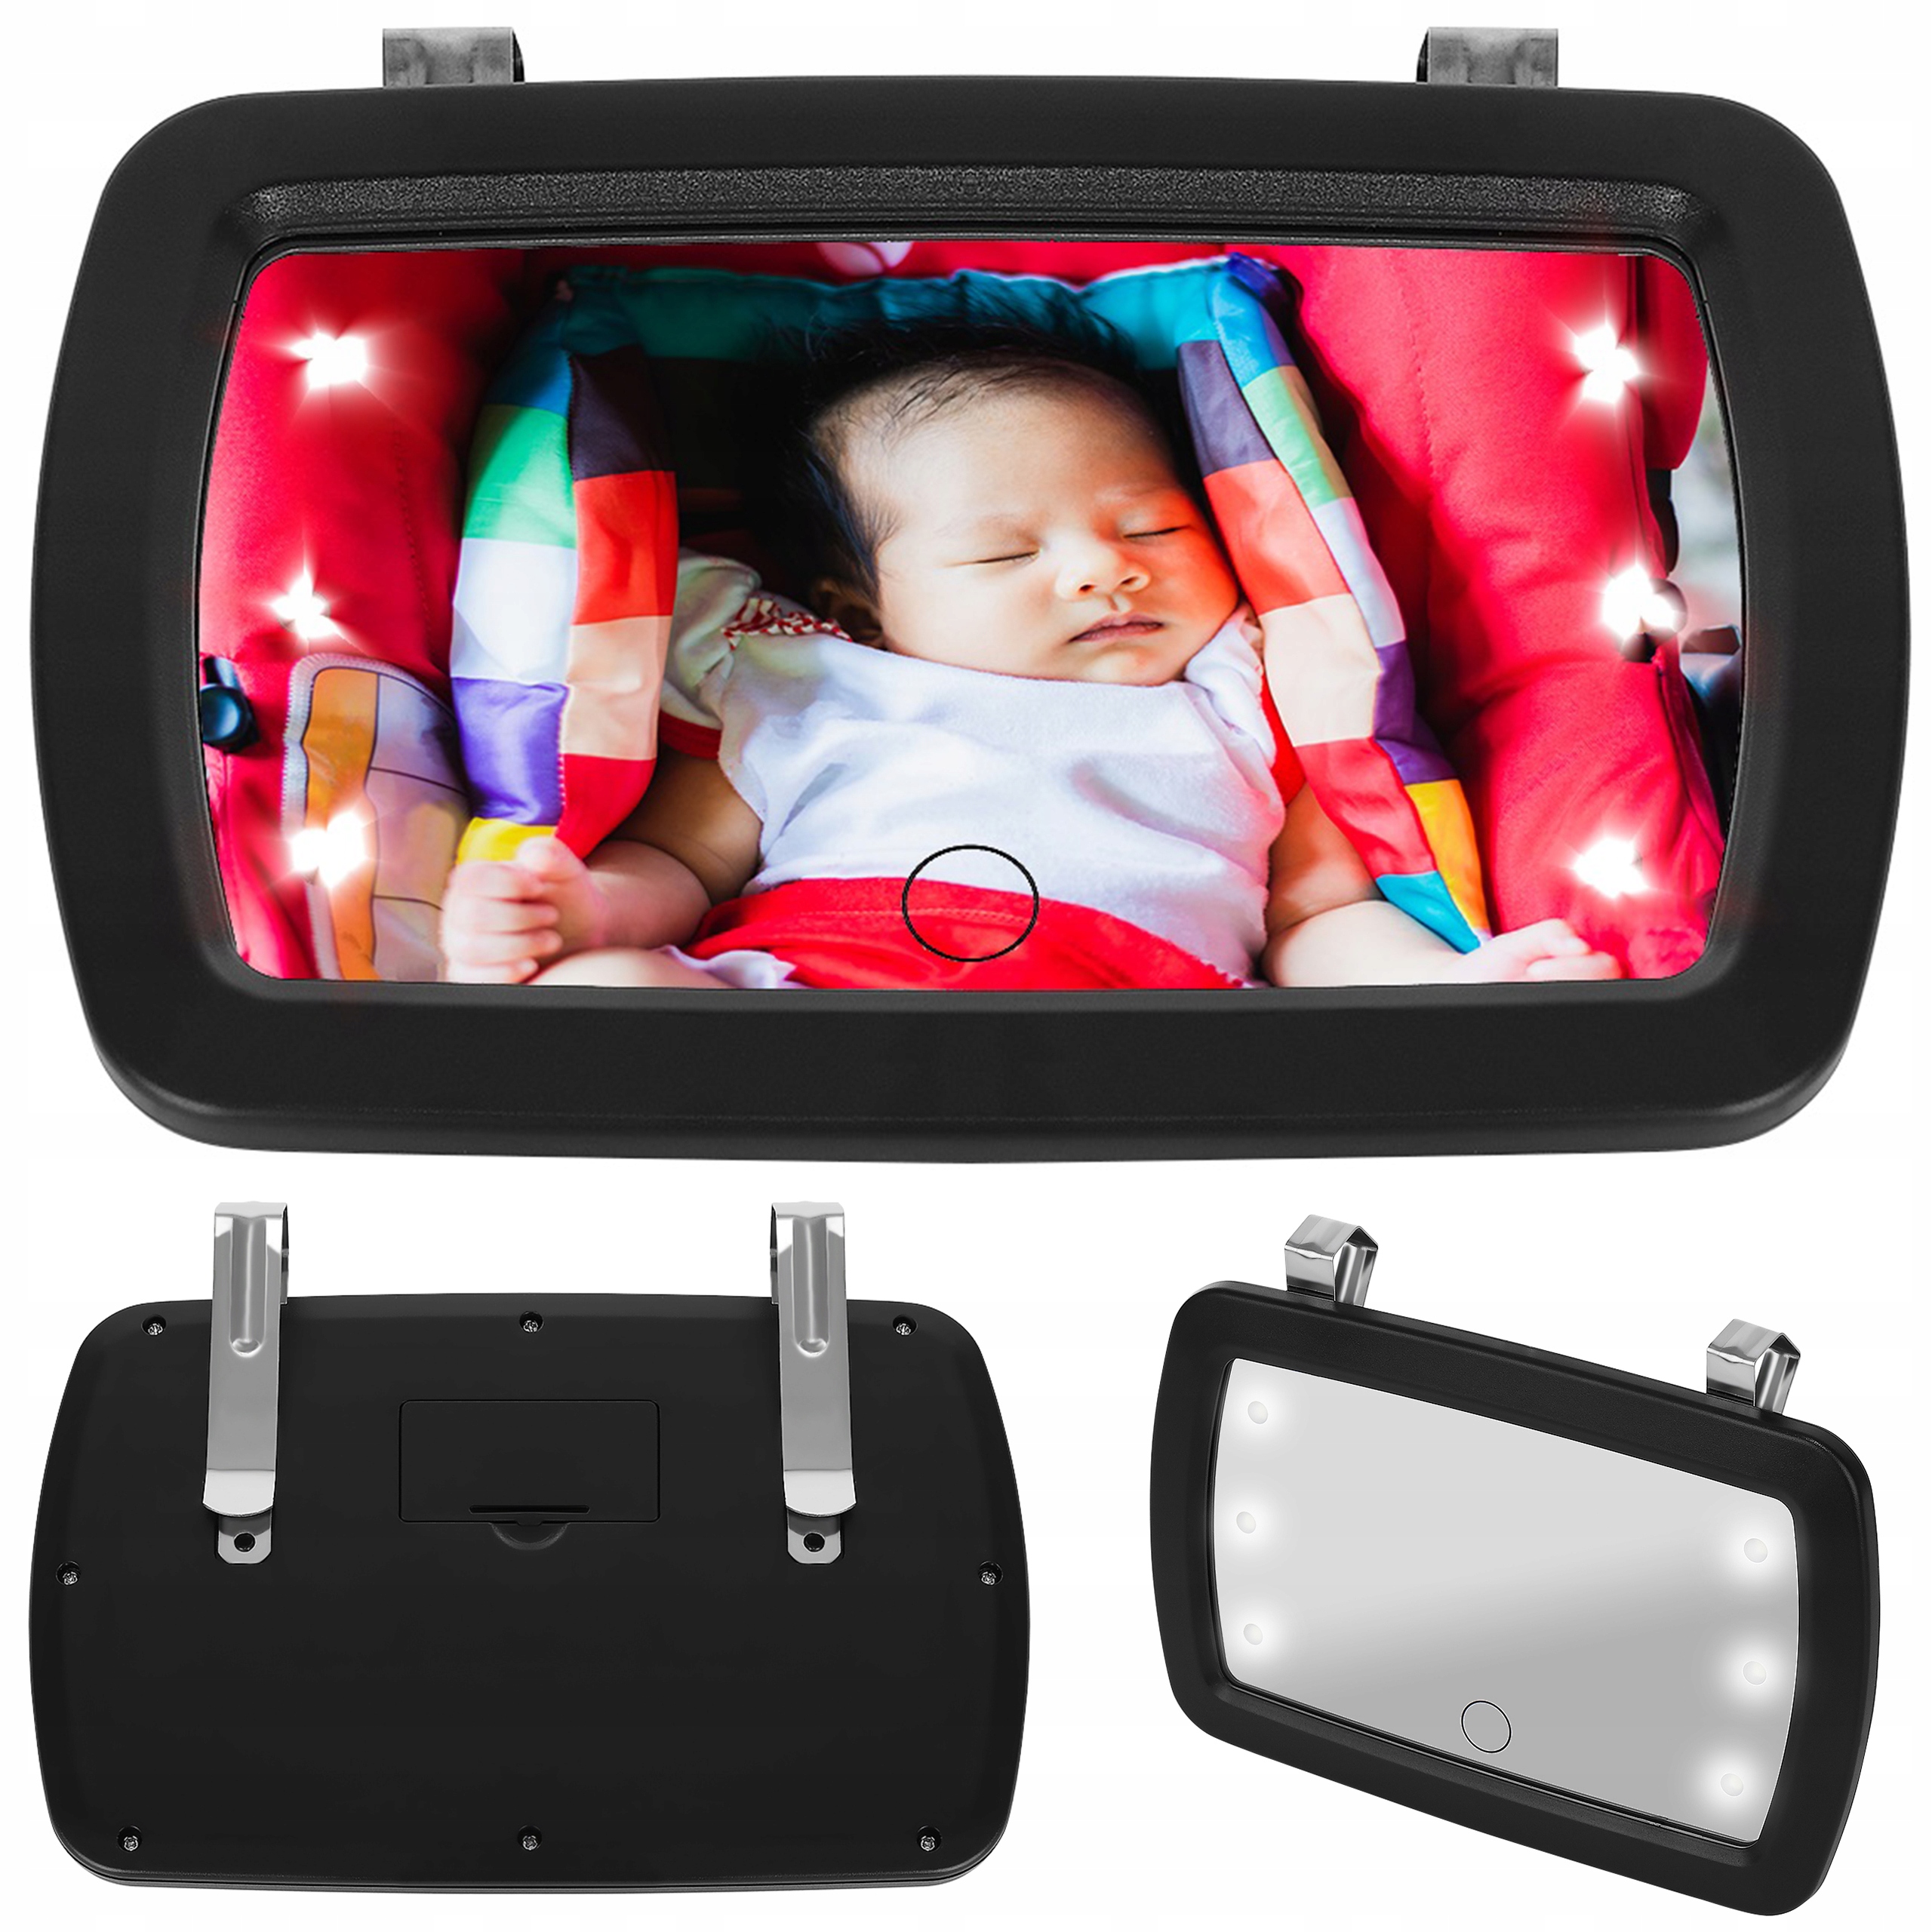 Oglinda auto pentru bebelusi cu LED idealSTORE Junior Magic Mirror, Dimensiuni 18 x 11 cm, Rotatie 360 de grade, Proiectata sa observe copilul pe scaunul auto, Se monteaza pe parasolar cu doua manere